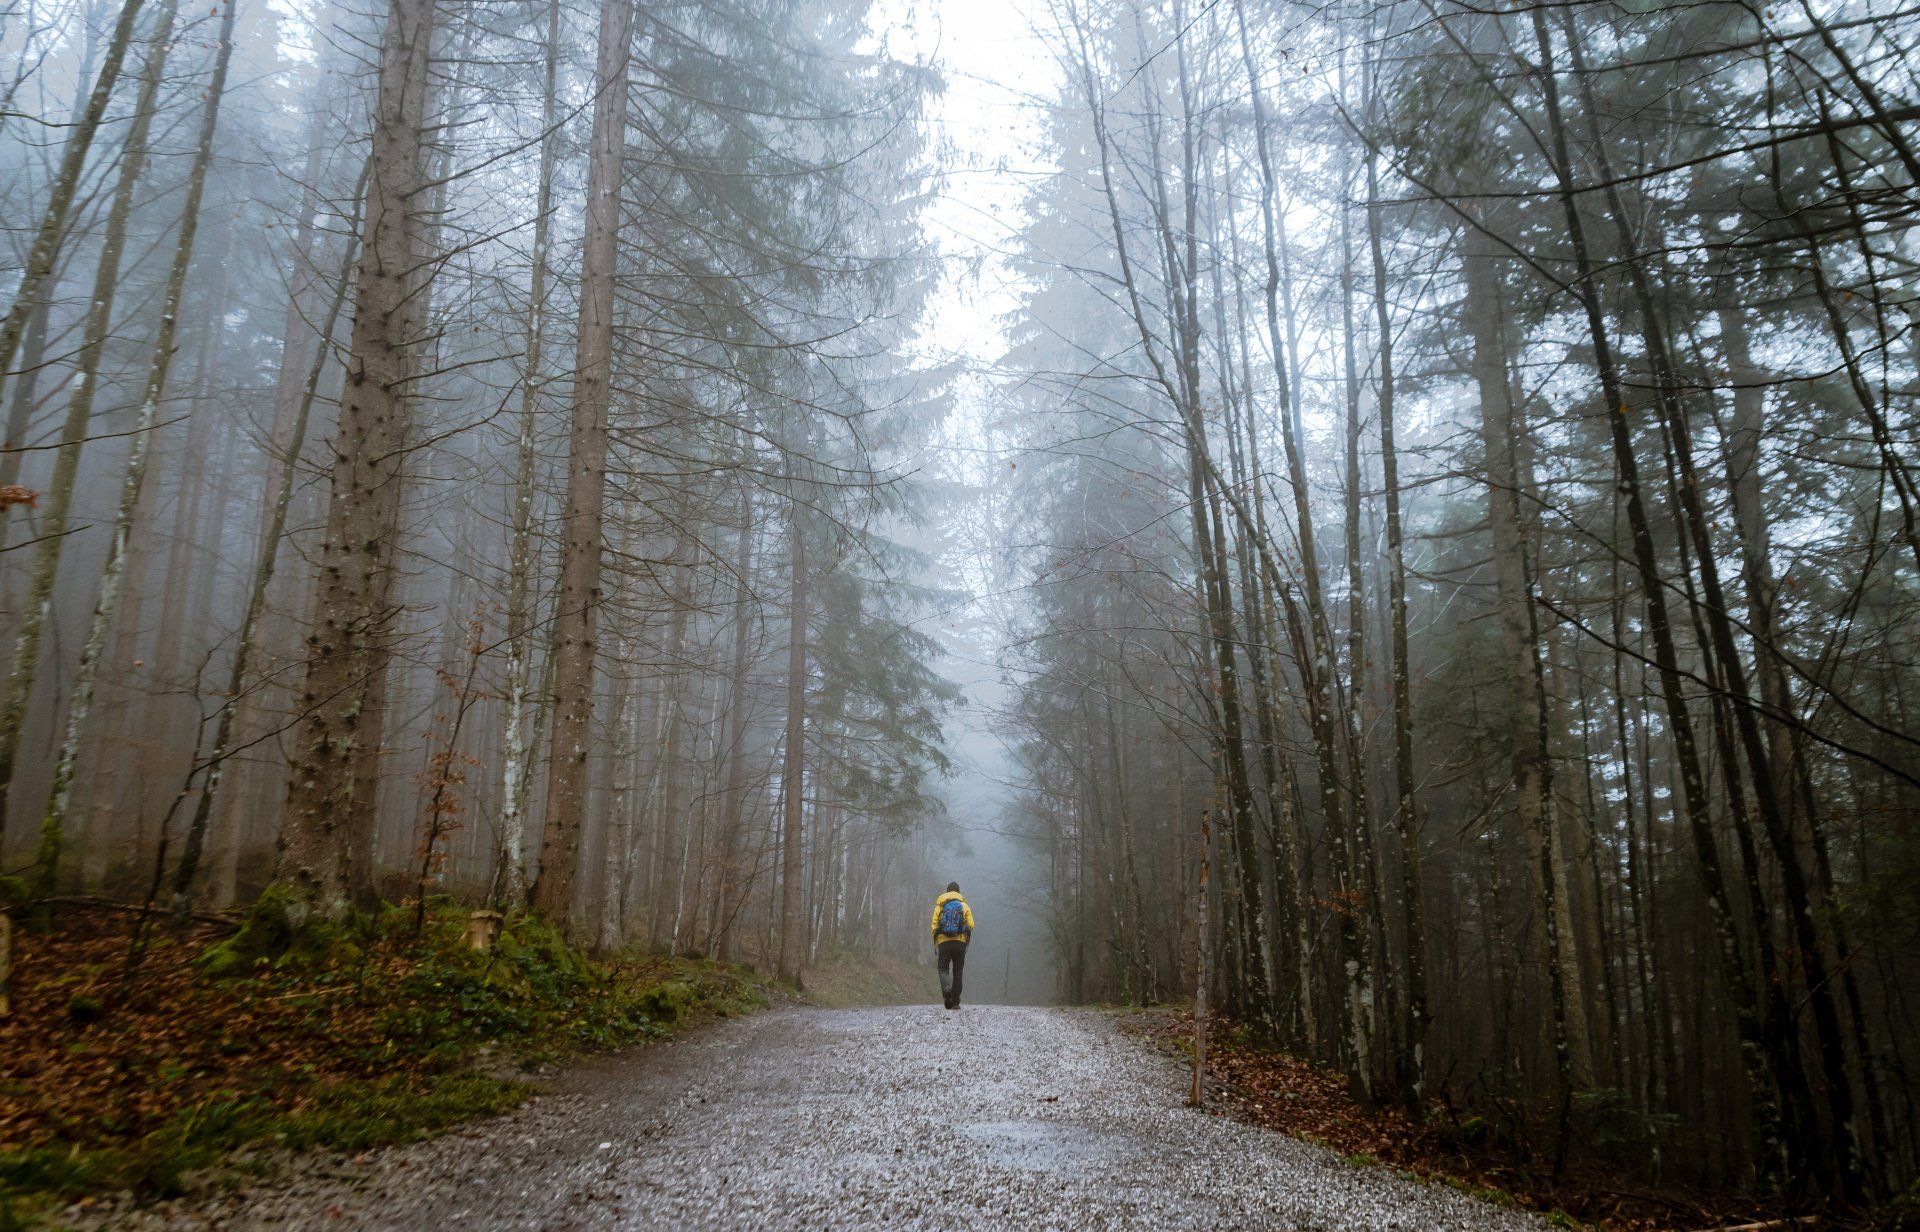 A hiker walking alongside a trail in the woods.